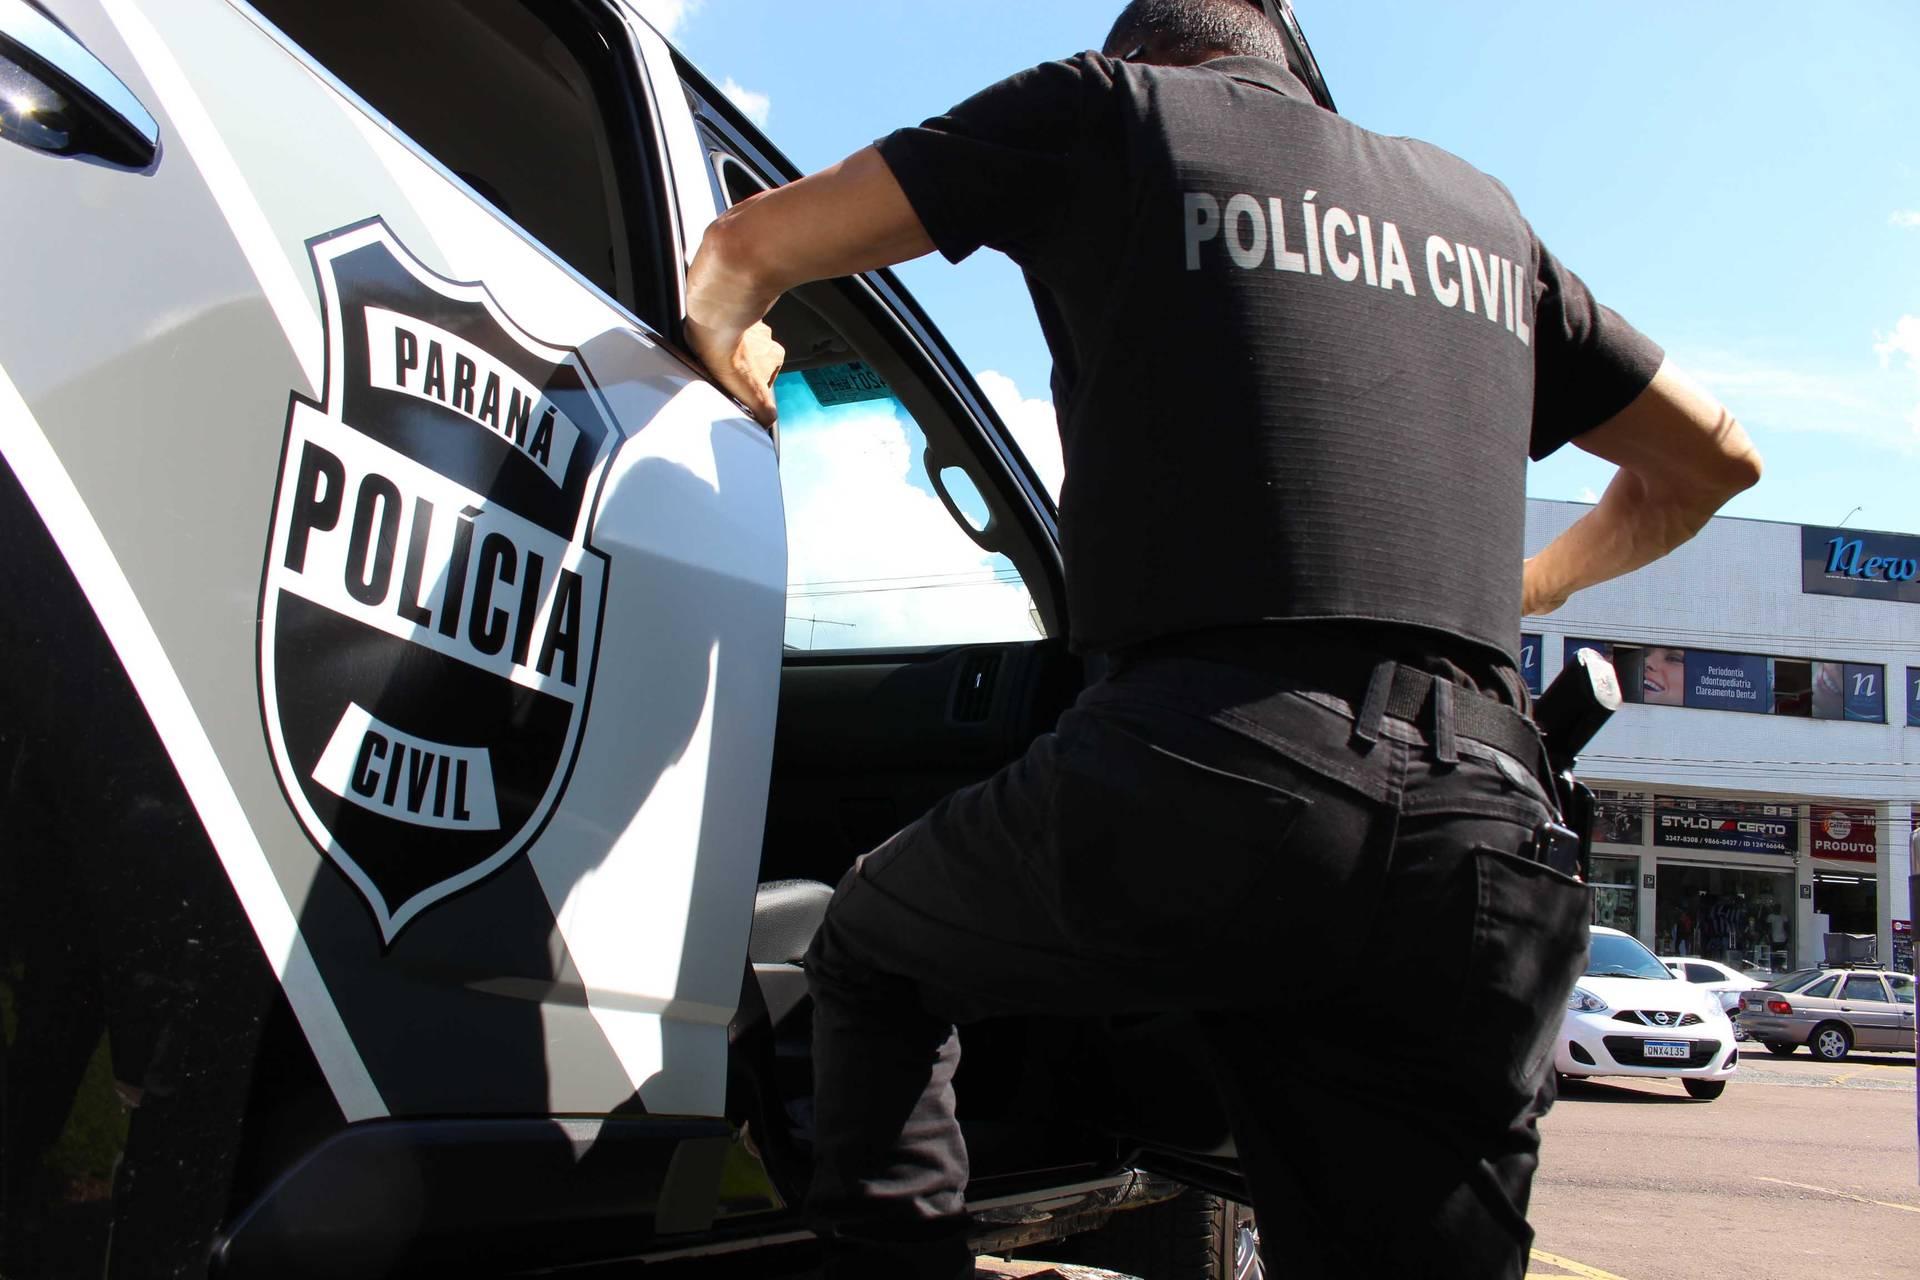 Durante operação contra o tráfico de drogas, Polícia Civil prende indivíduo com mandado de prisão em aberto